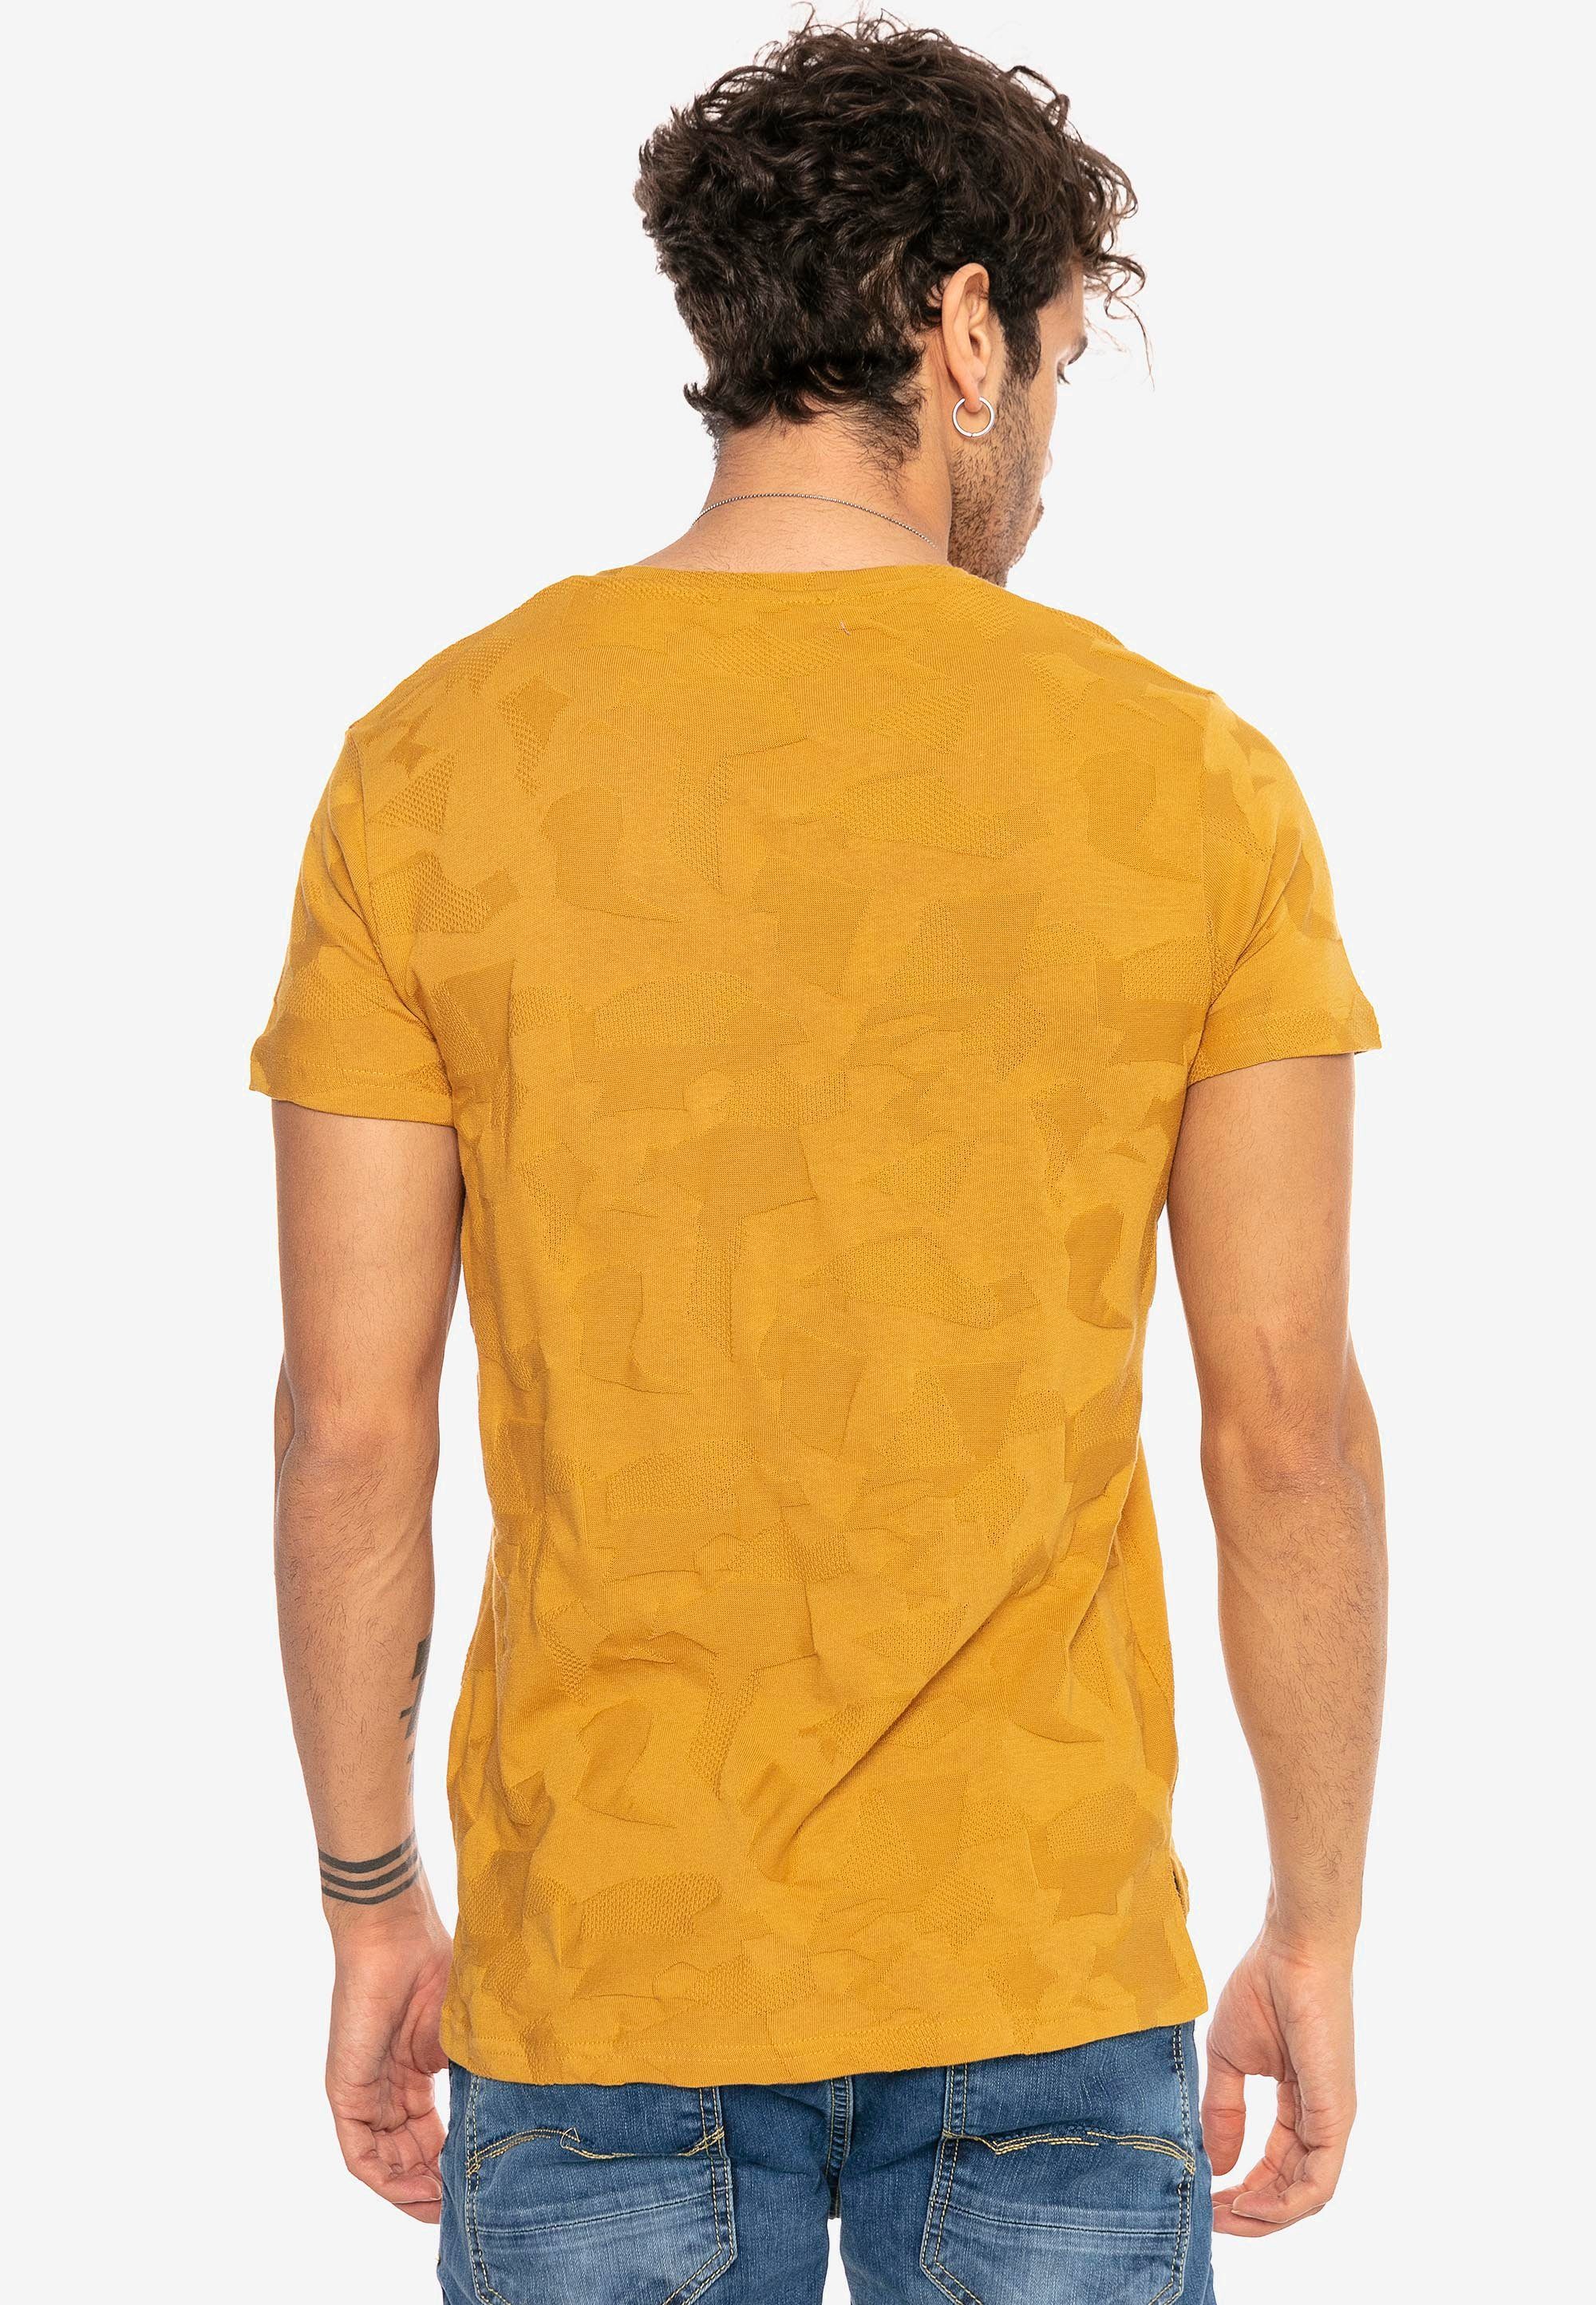 Rapids senf "Pressed-Pieces"-Design innovativem RedBridge T-Shirt mit Cedar